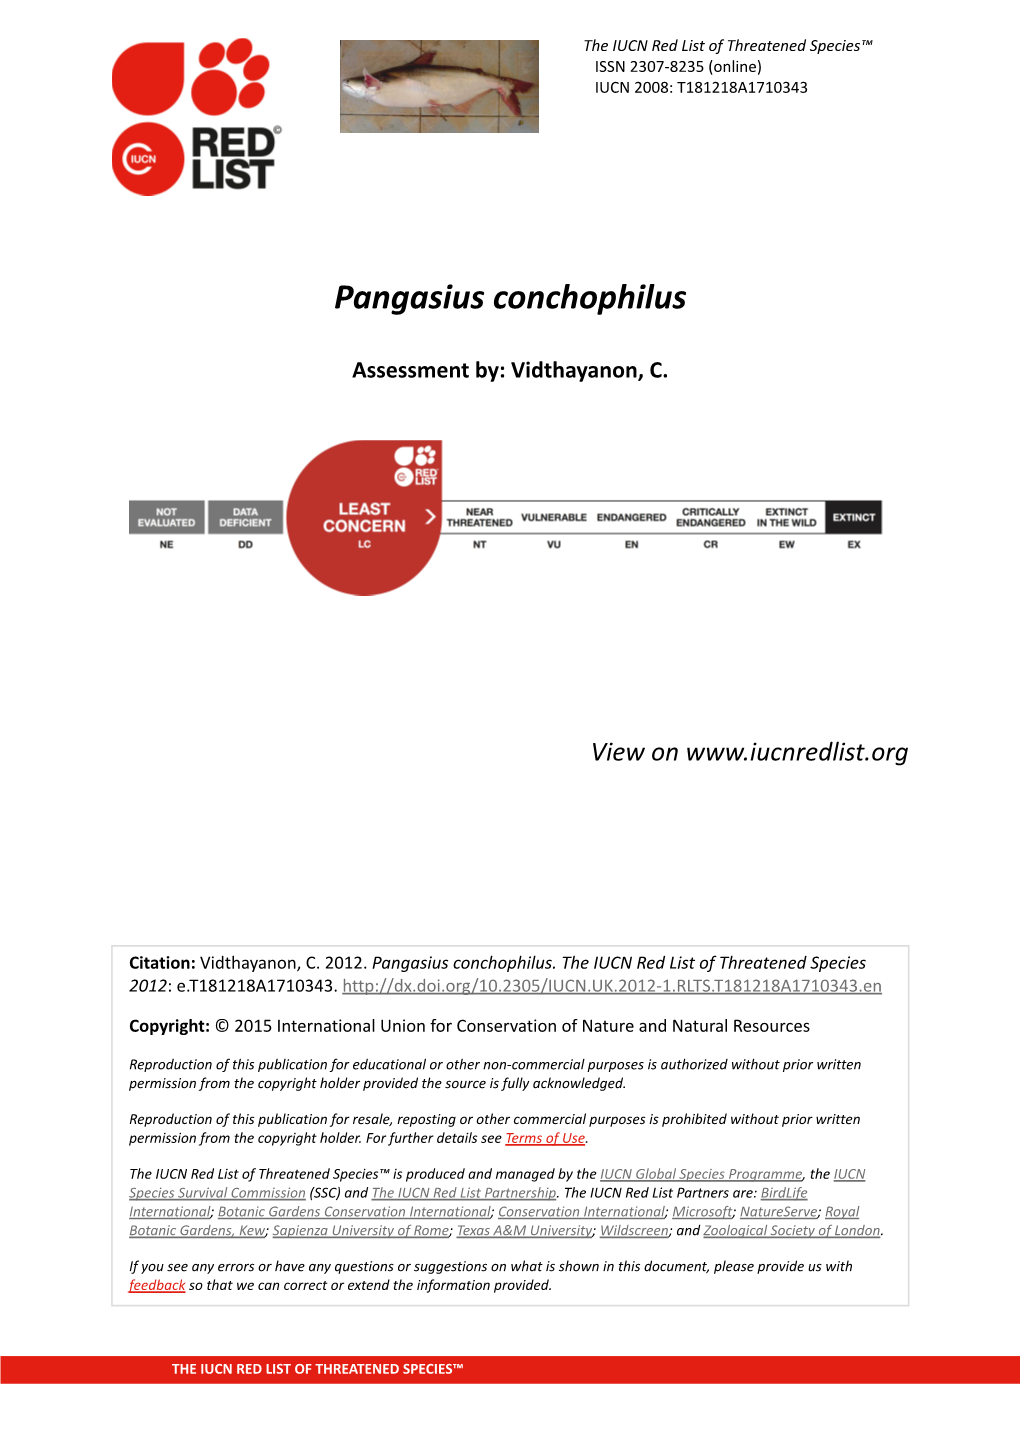 Pangasius Conchophilus